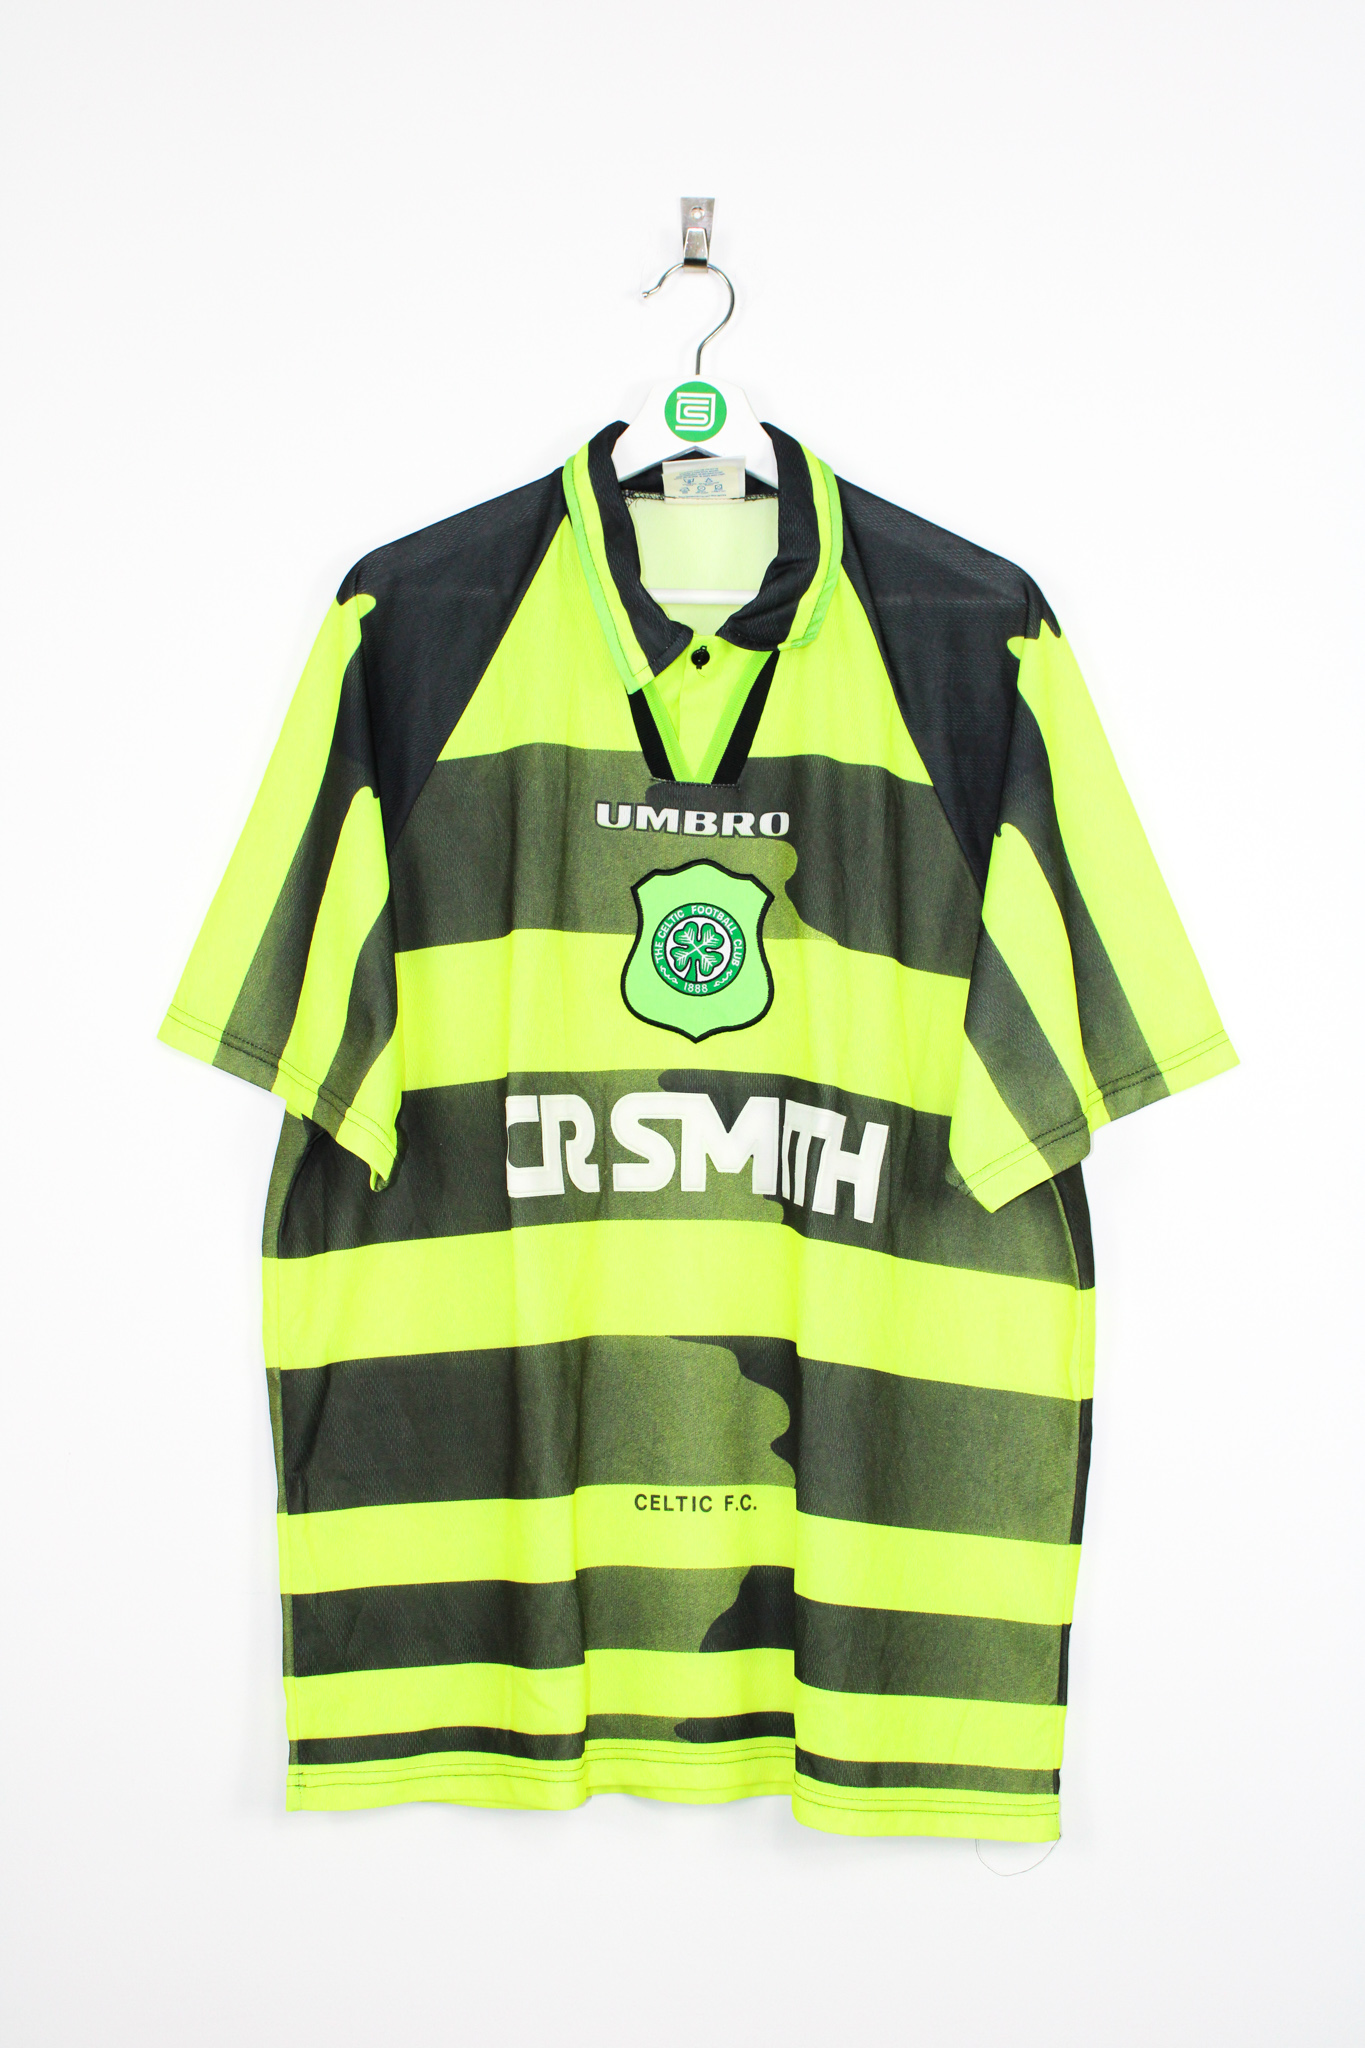 Celtic fc retro kit 1997